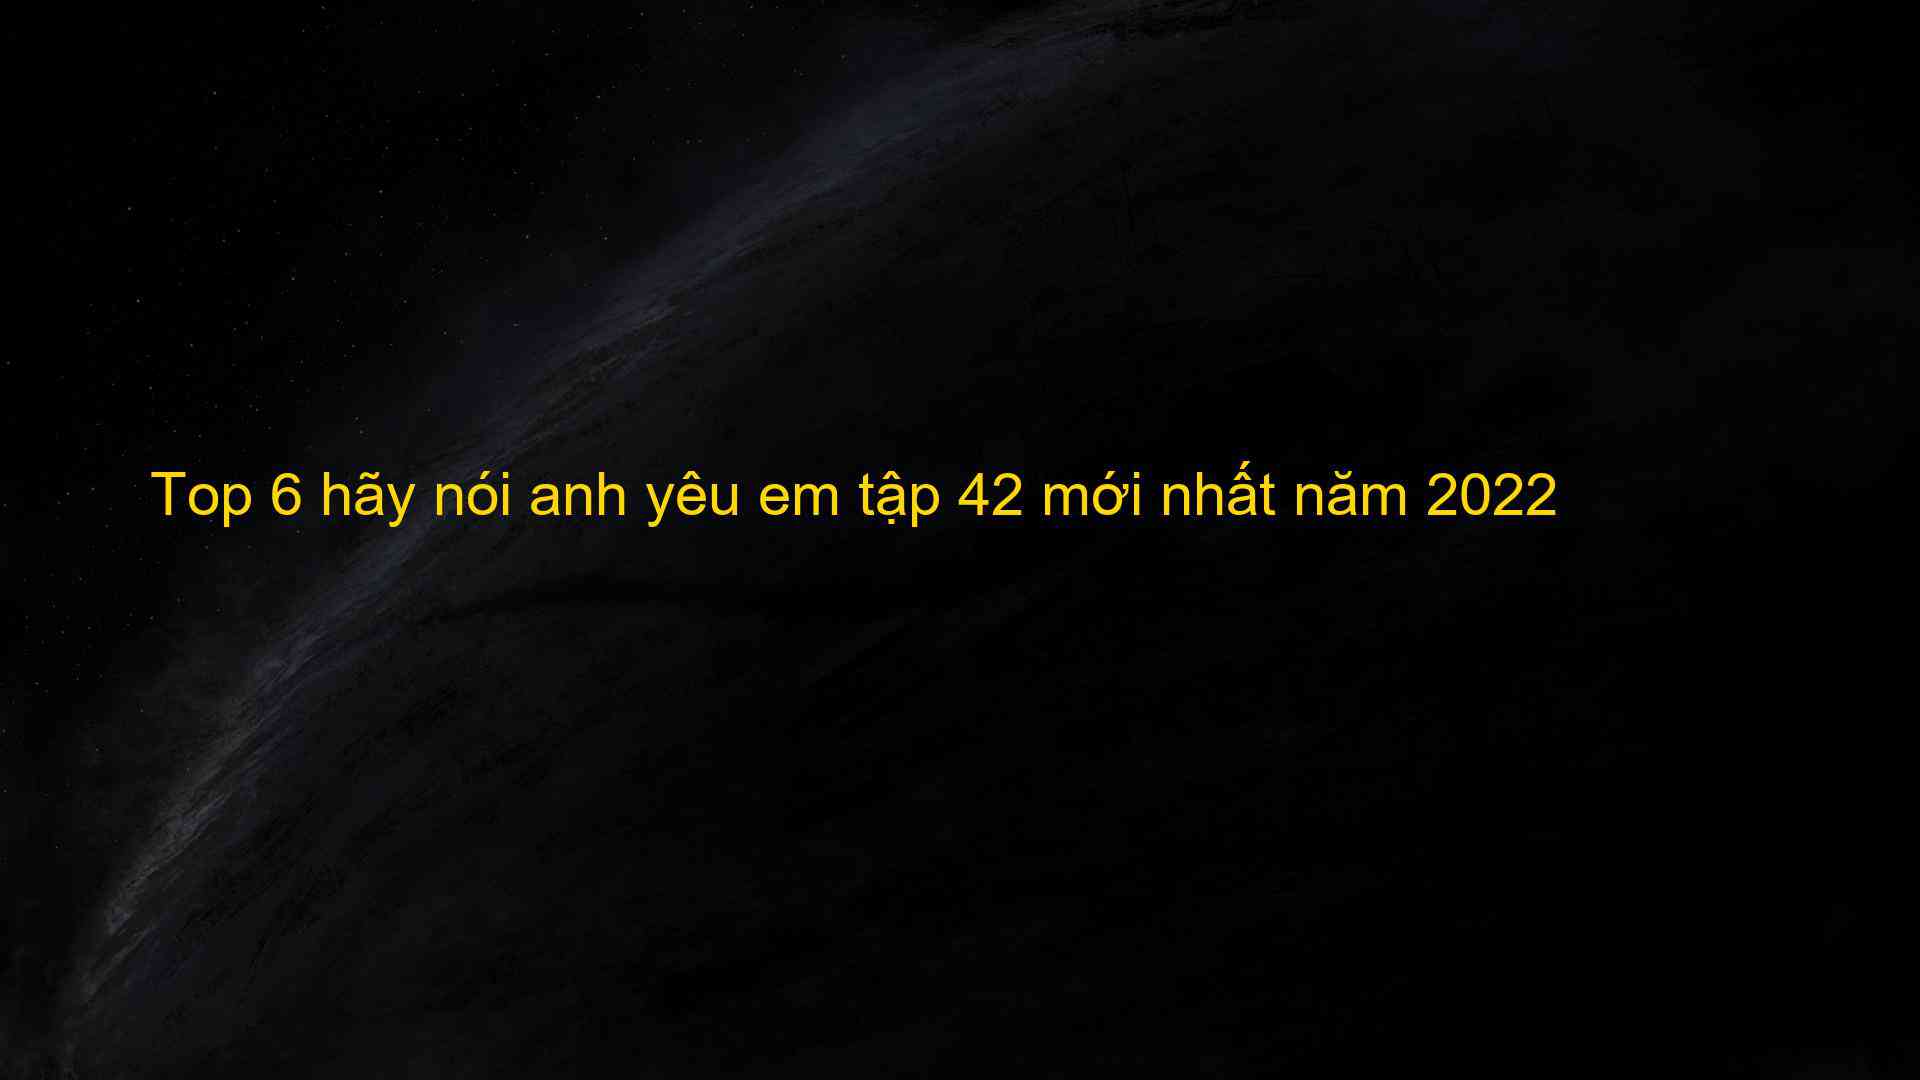 Top 6 hãy nói anh yêu em tập 42 mới nhất năm 2022 - Kiến Thức Cho Người lao Động Việt Nam